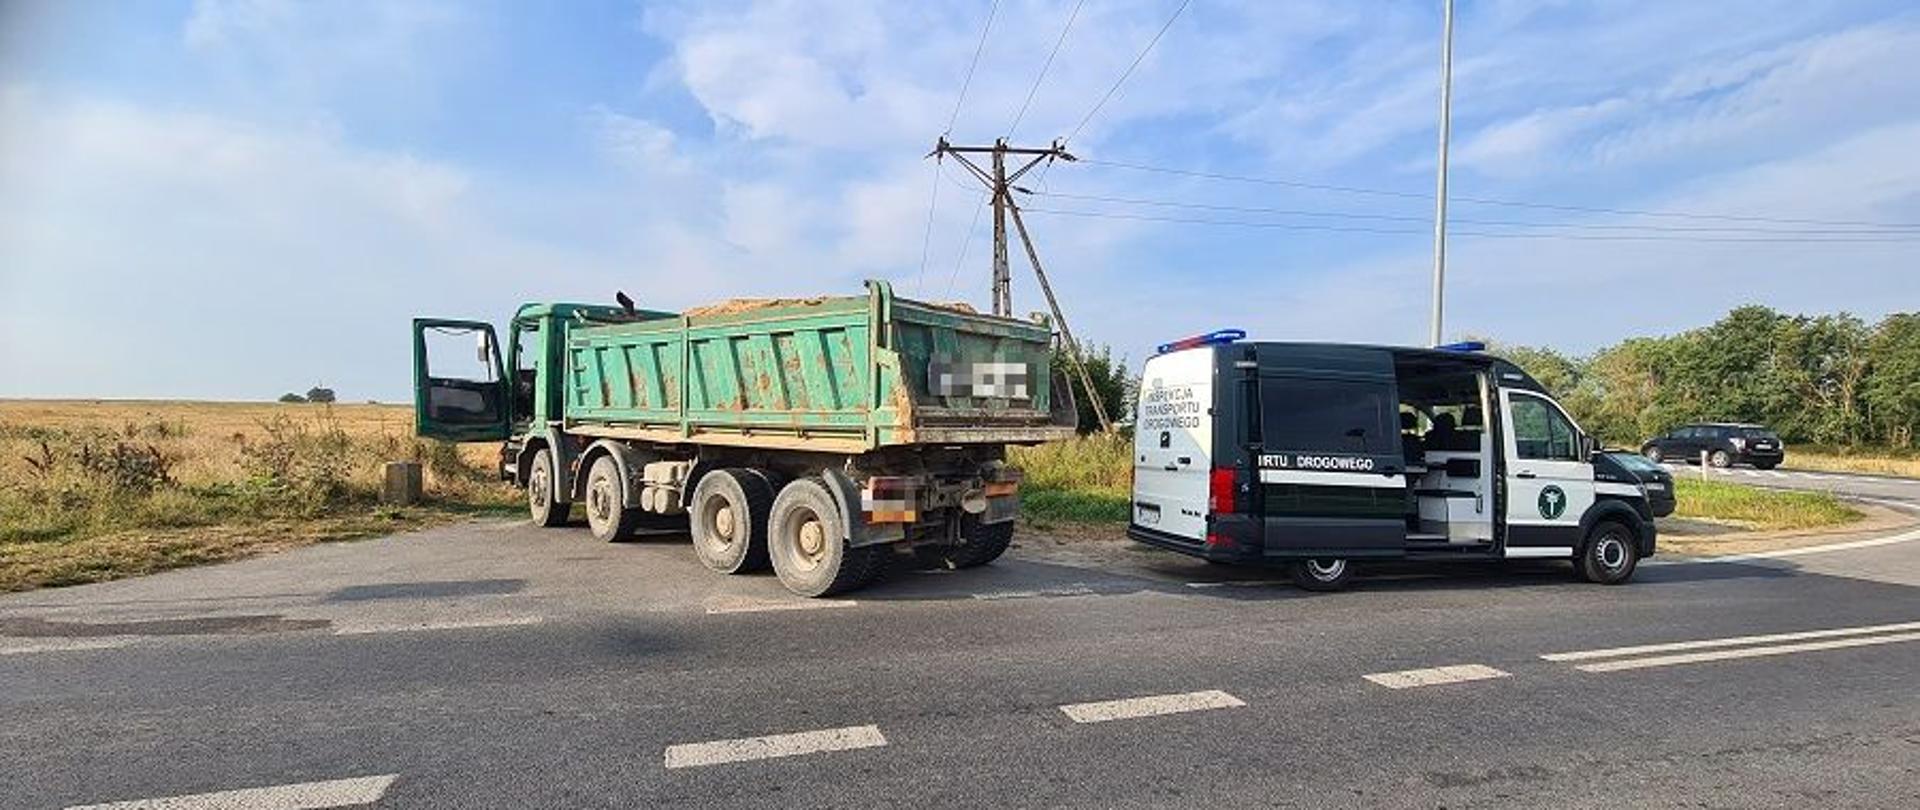 W dniu 18 sierpnia br., zachodniopomorscy inspektorzy, pełniąc służbę w okolicach miejscowości Kołbaskowo, zauważyli samochód ciężarowy z niezabezpieczonym ładunkiem sypkim